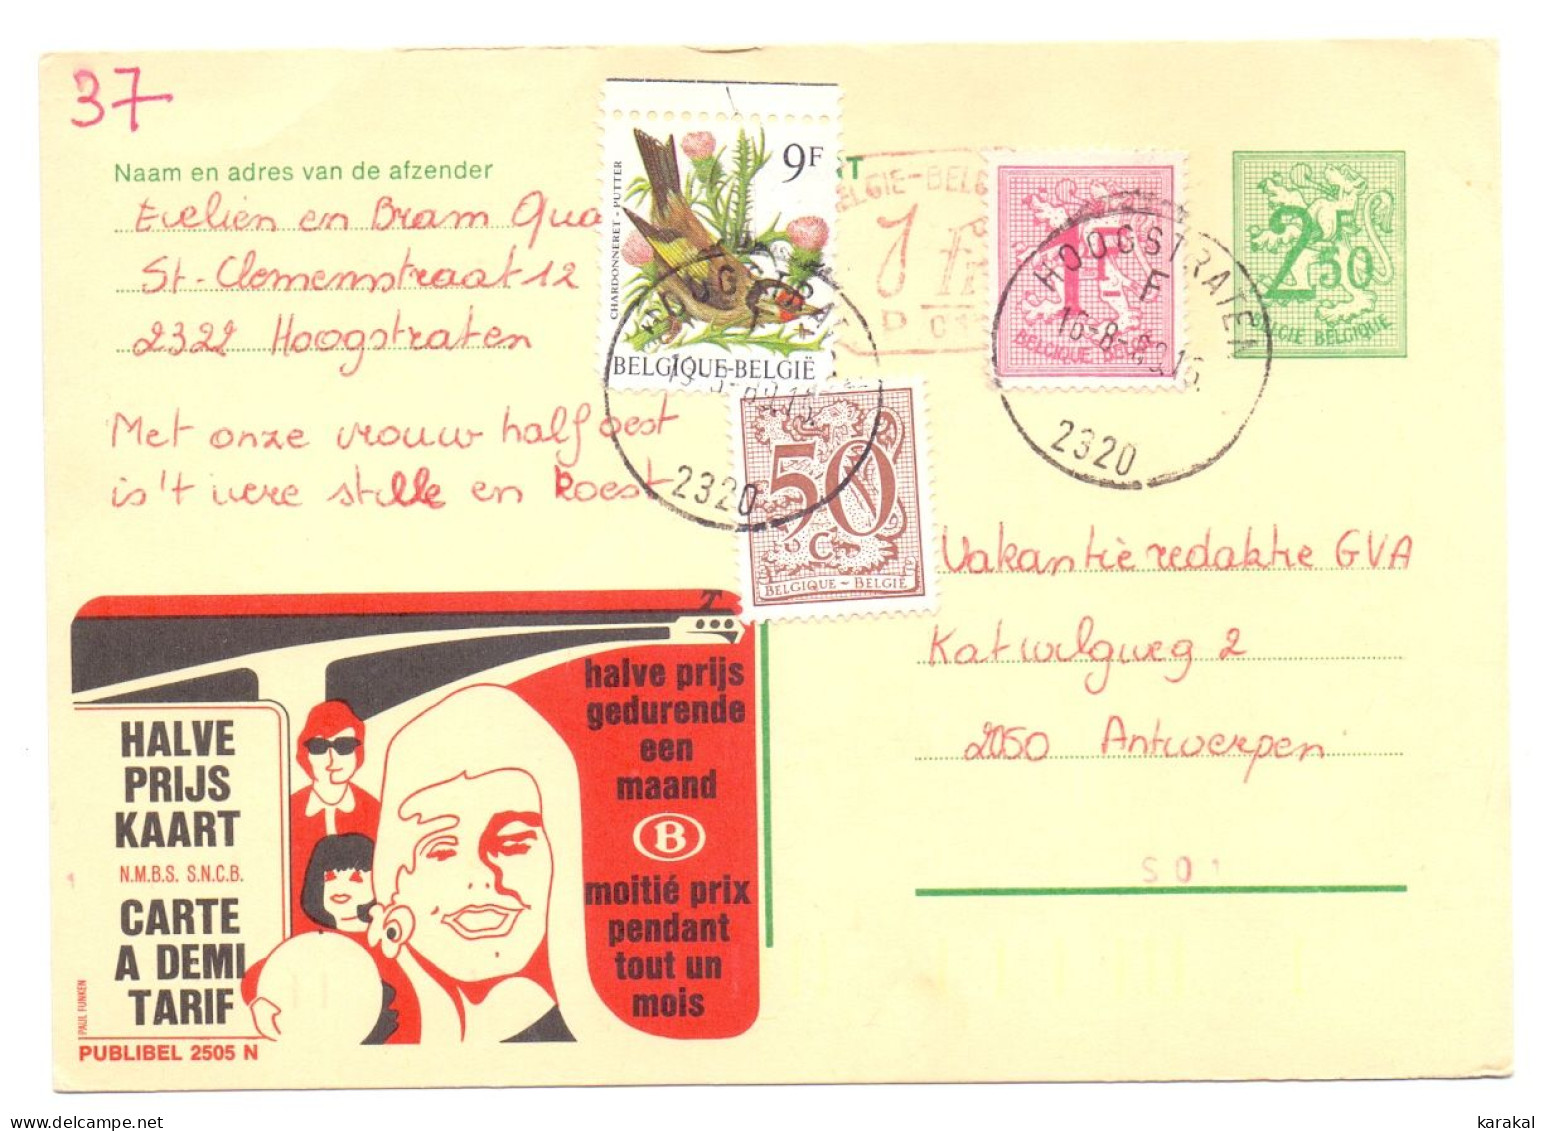 Belgique Entier Postal Stationery Publibel 2505 N P010 SNCB NMBS Halve Prijs Kaart Hoogstraten 1989 - Avis Changement Adresse